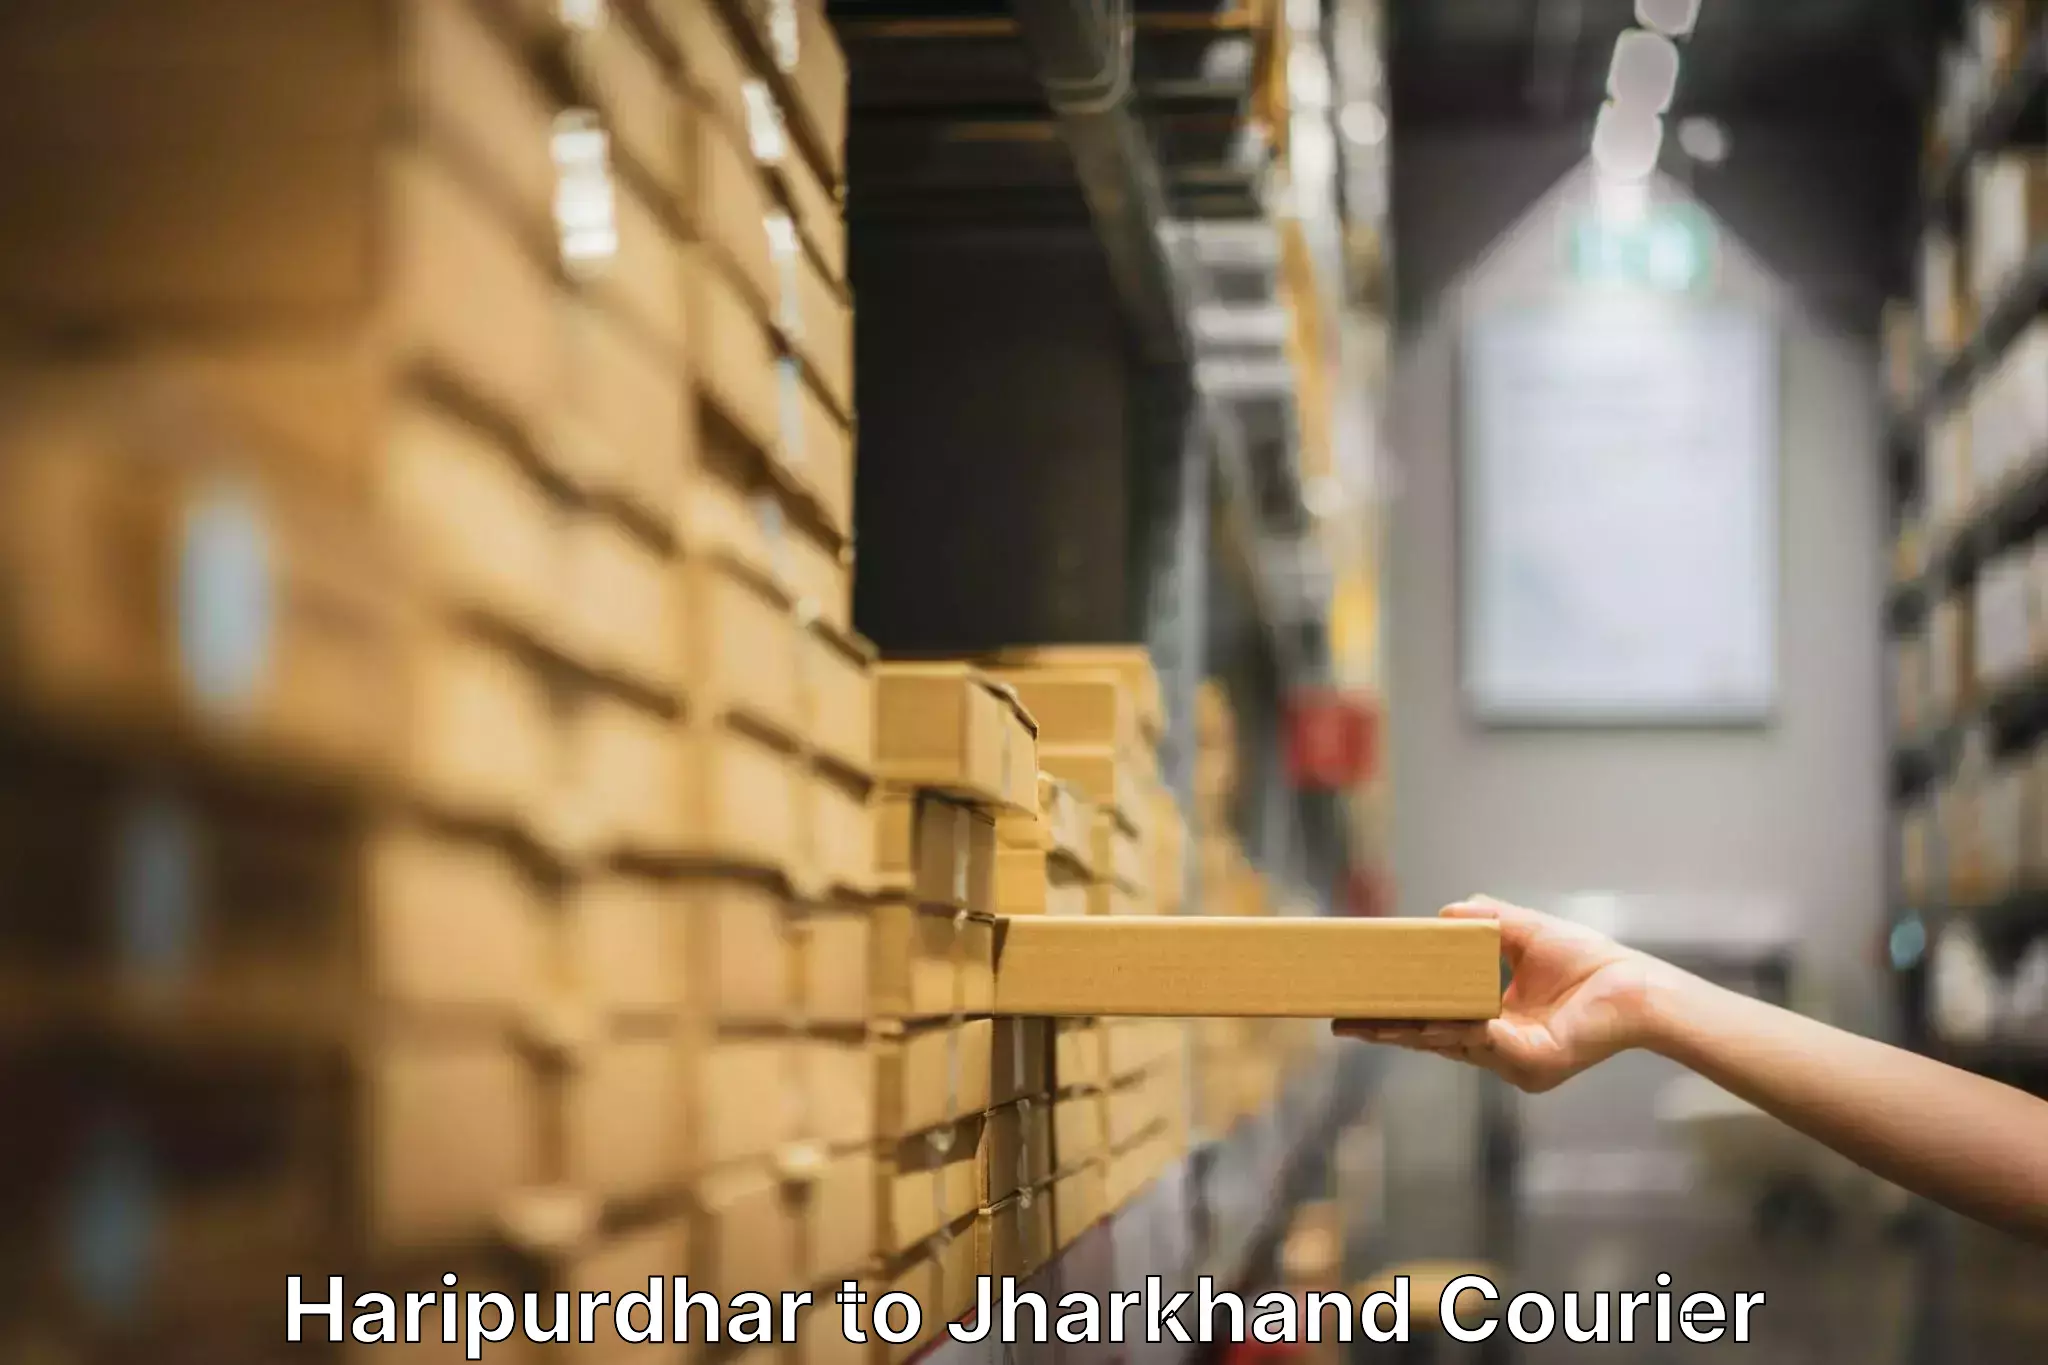 Furniture moving experts Haripurdhar to Phusro